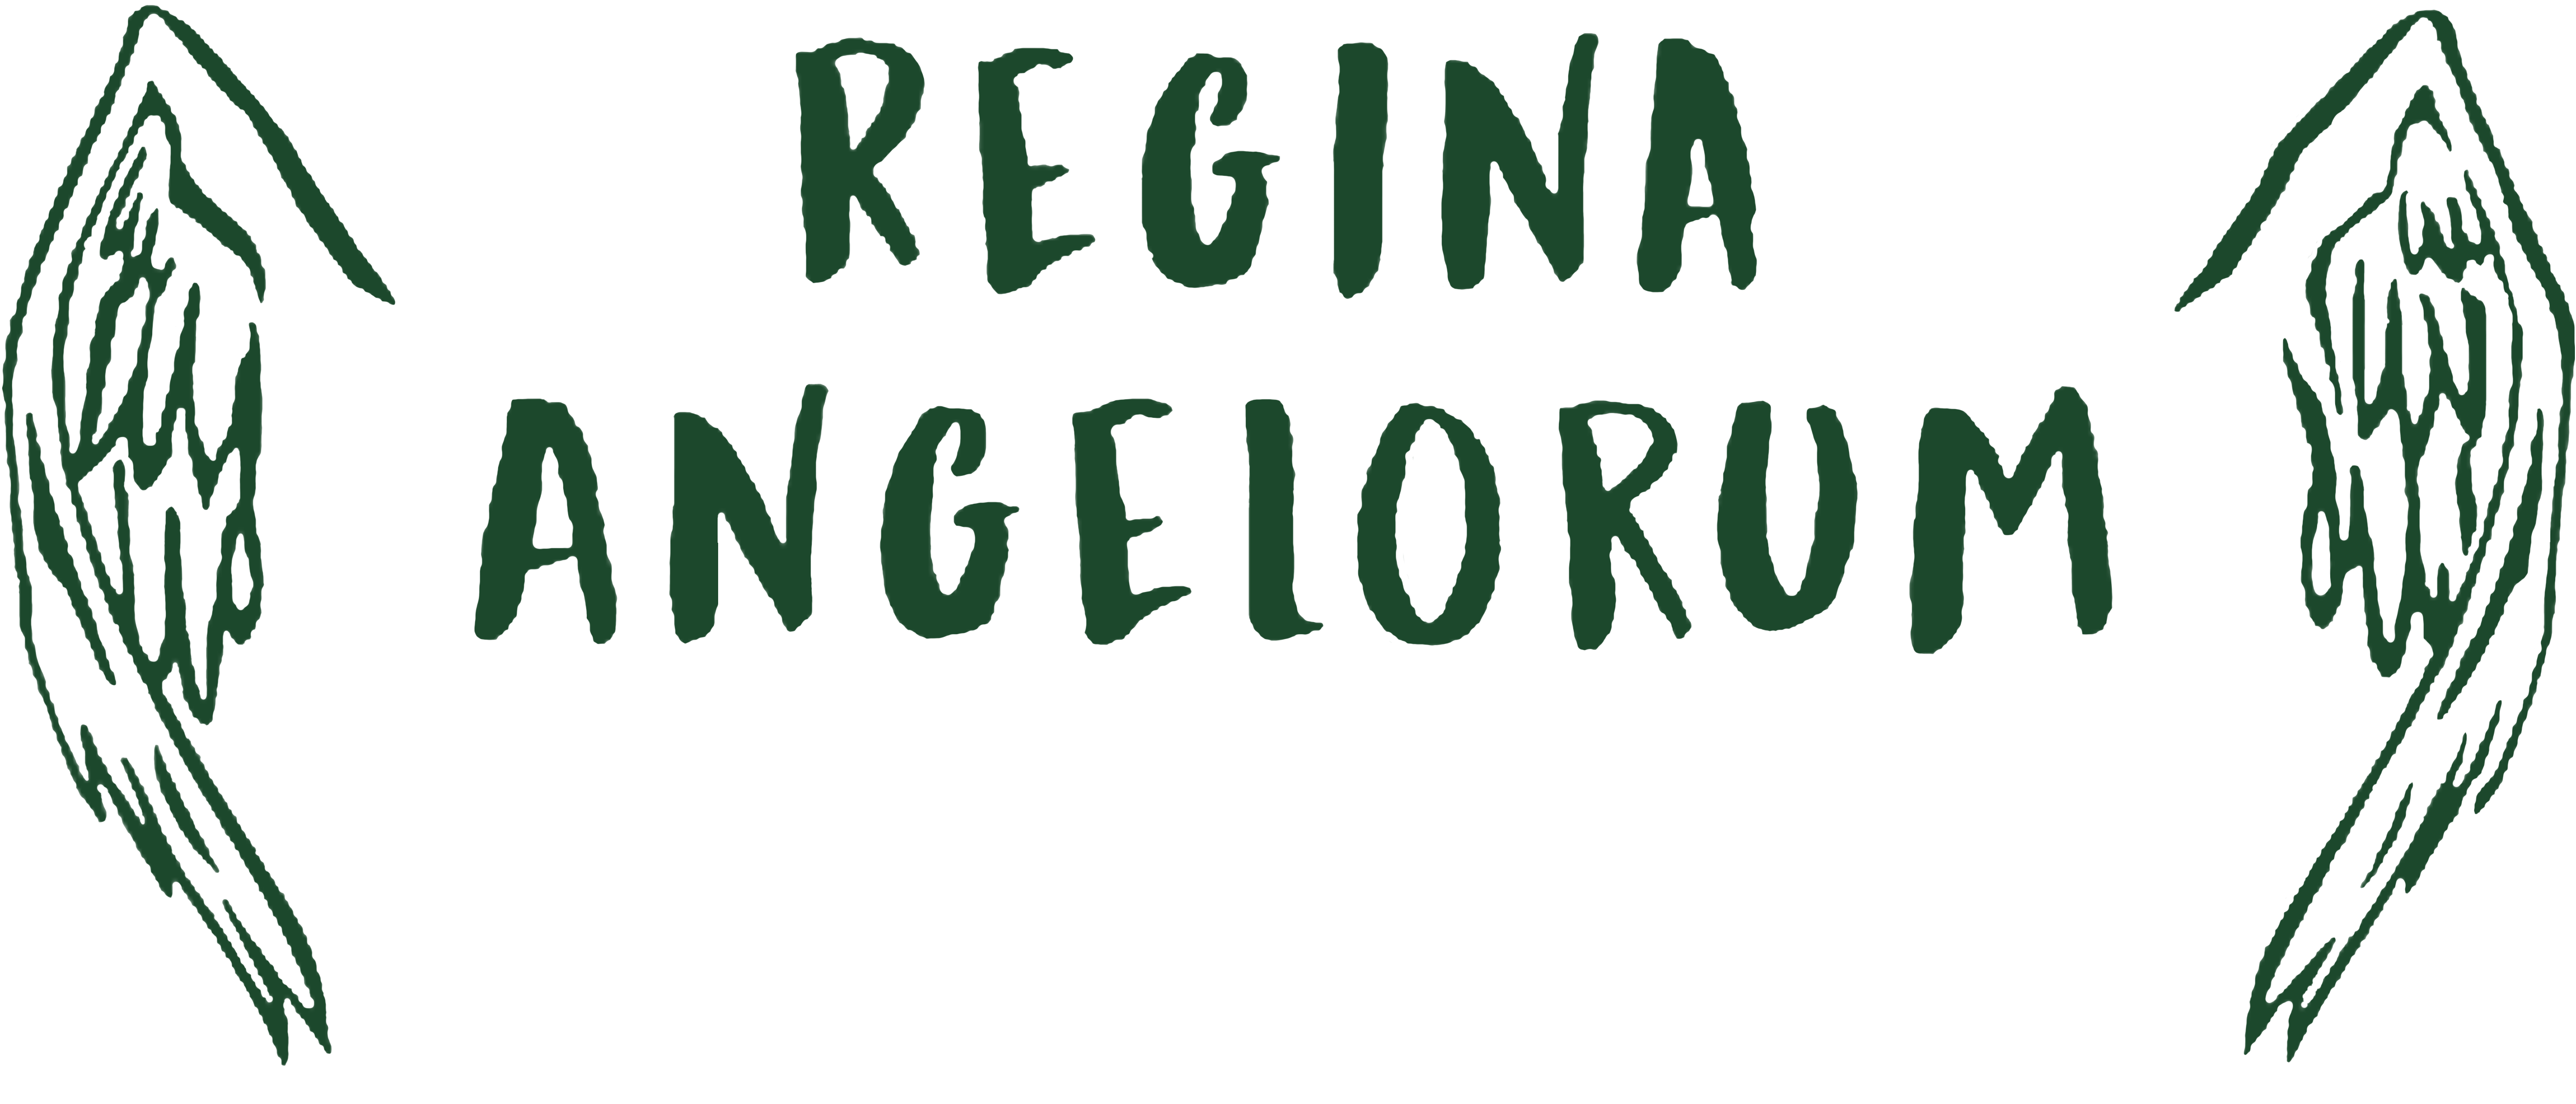 Regina Angelorum 25th Anniversary